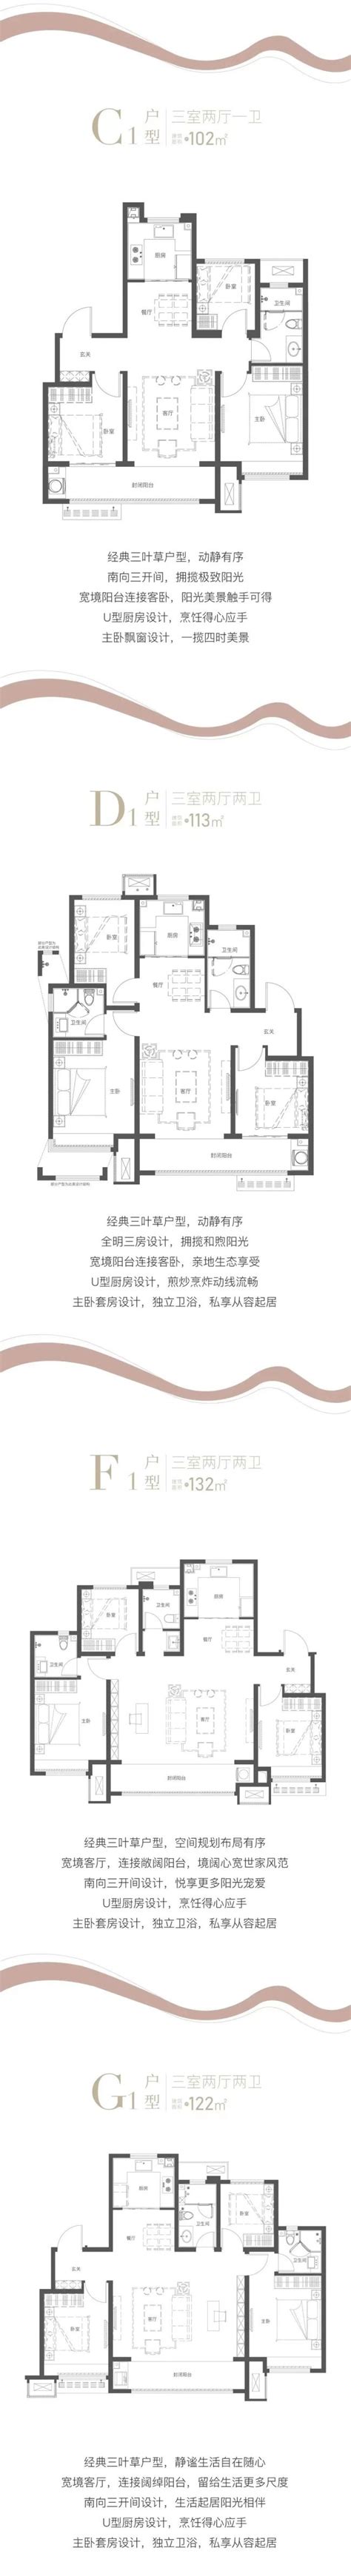 济南海信 · 君和 - 景立方（北京）景观规划设计有限公司